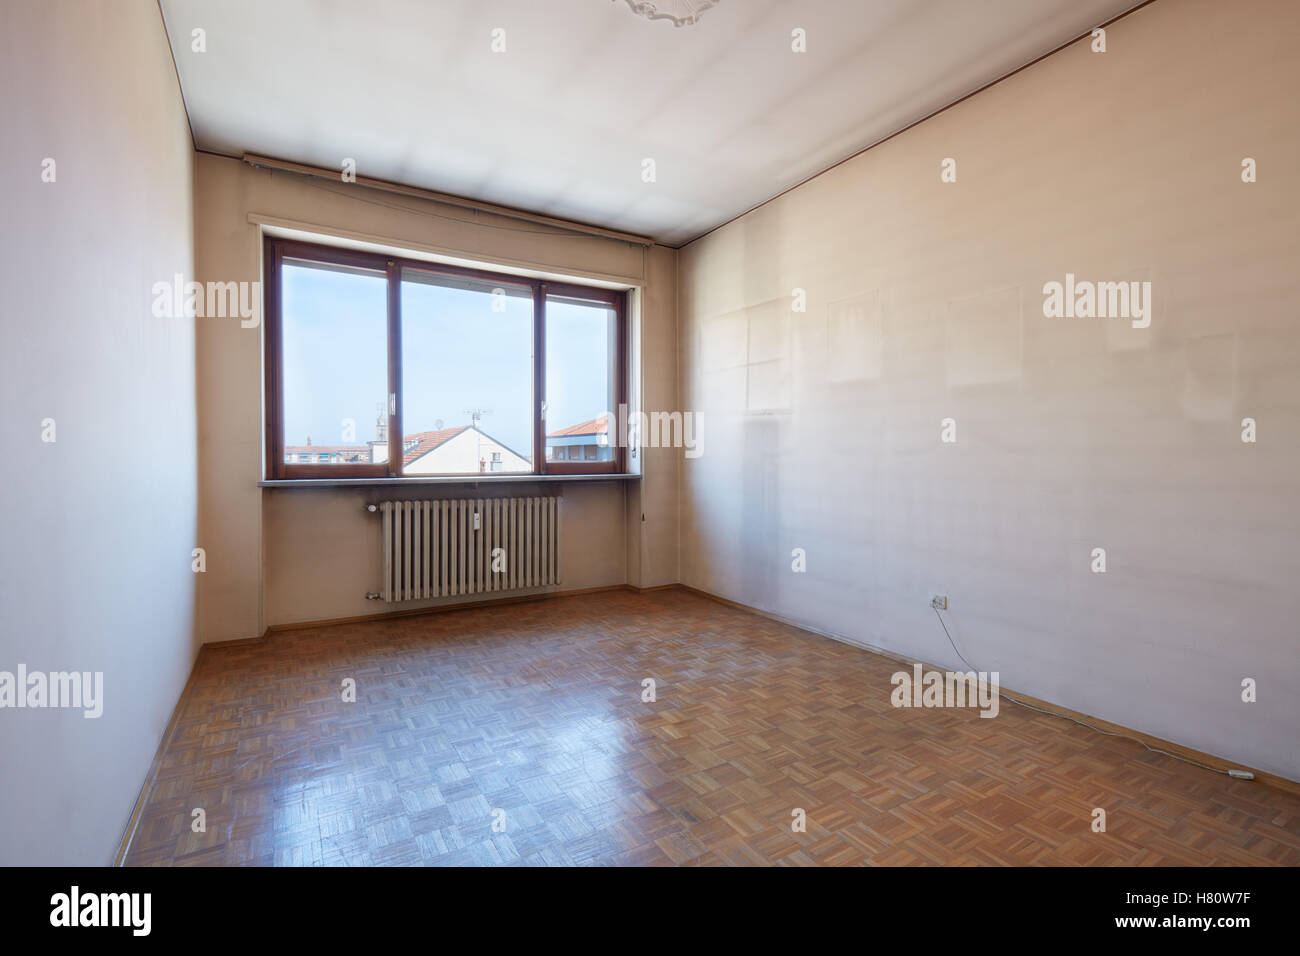 Leeren Raum Interieur mit Holzboden und schmutzige Wände Stockfoto